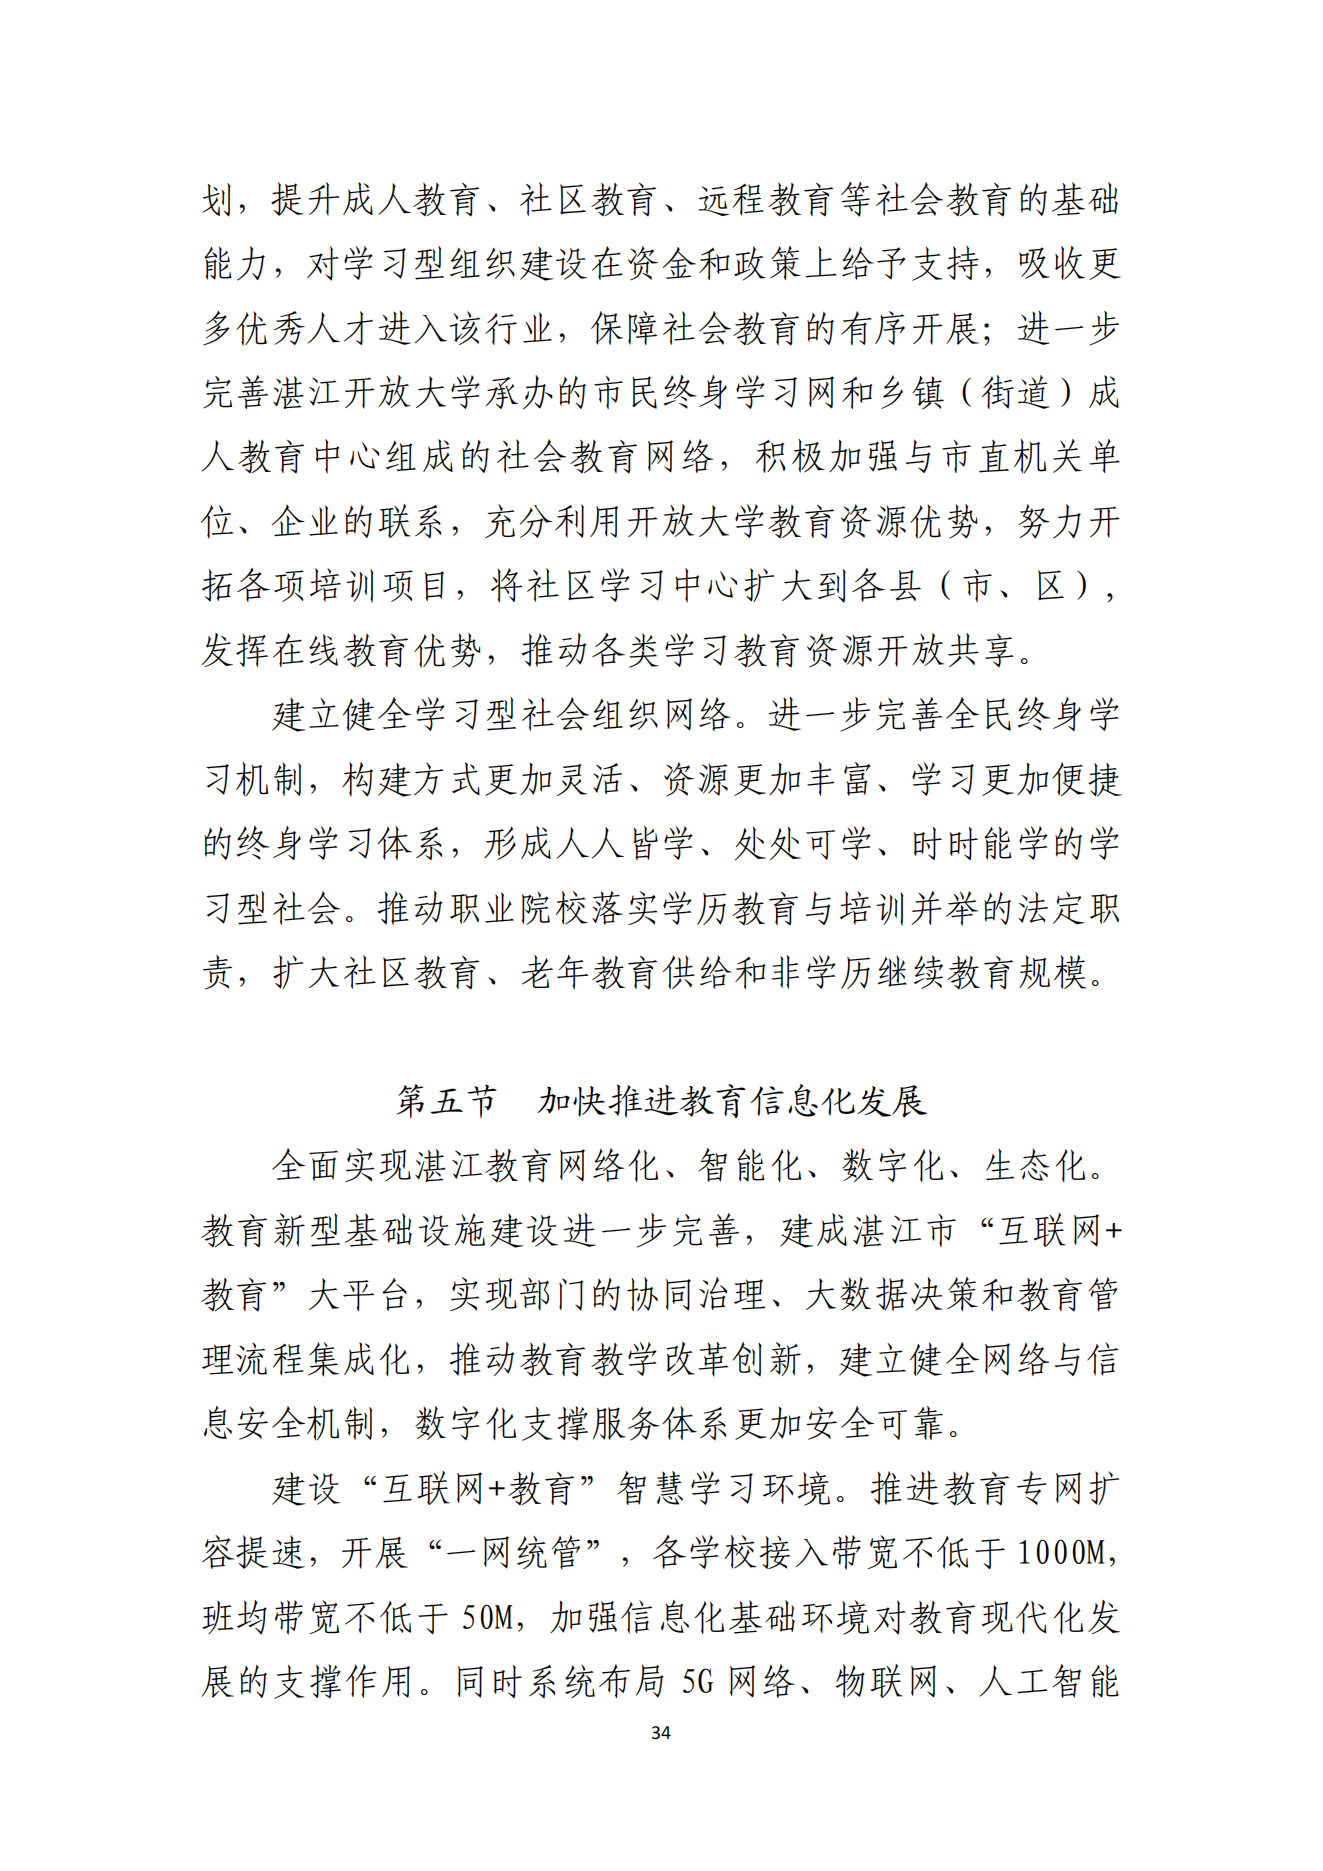 湛江市人民政府办公室关于印发湛江市教育发展“十四五”规划的通知_33.png